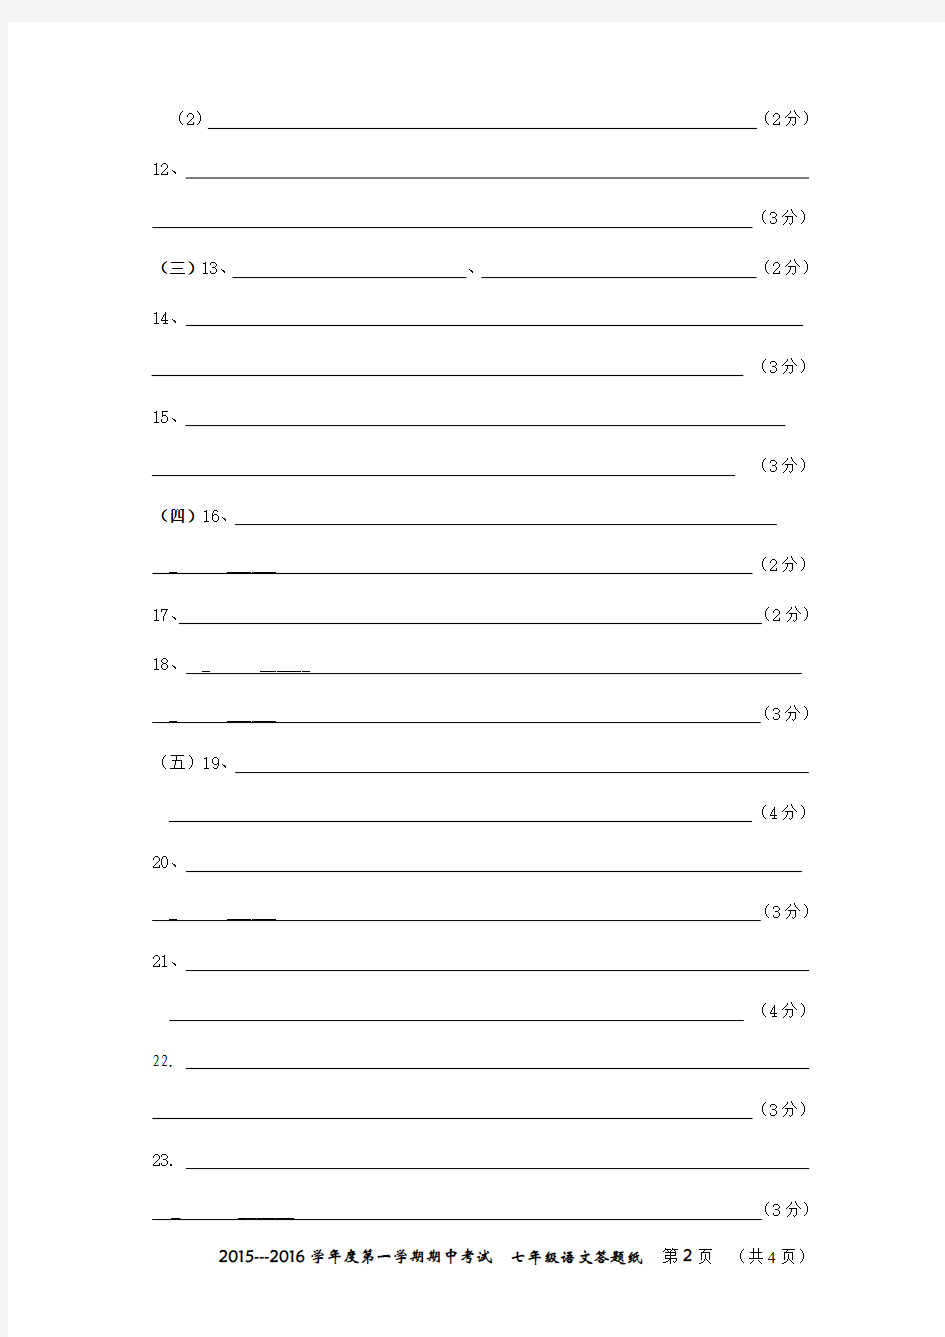 2015考试答题纸模板